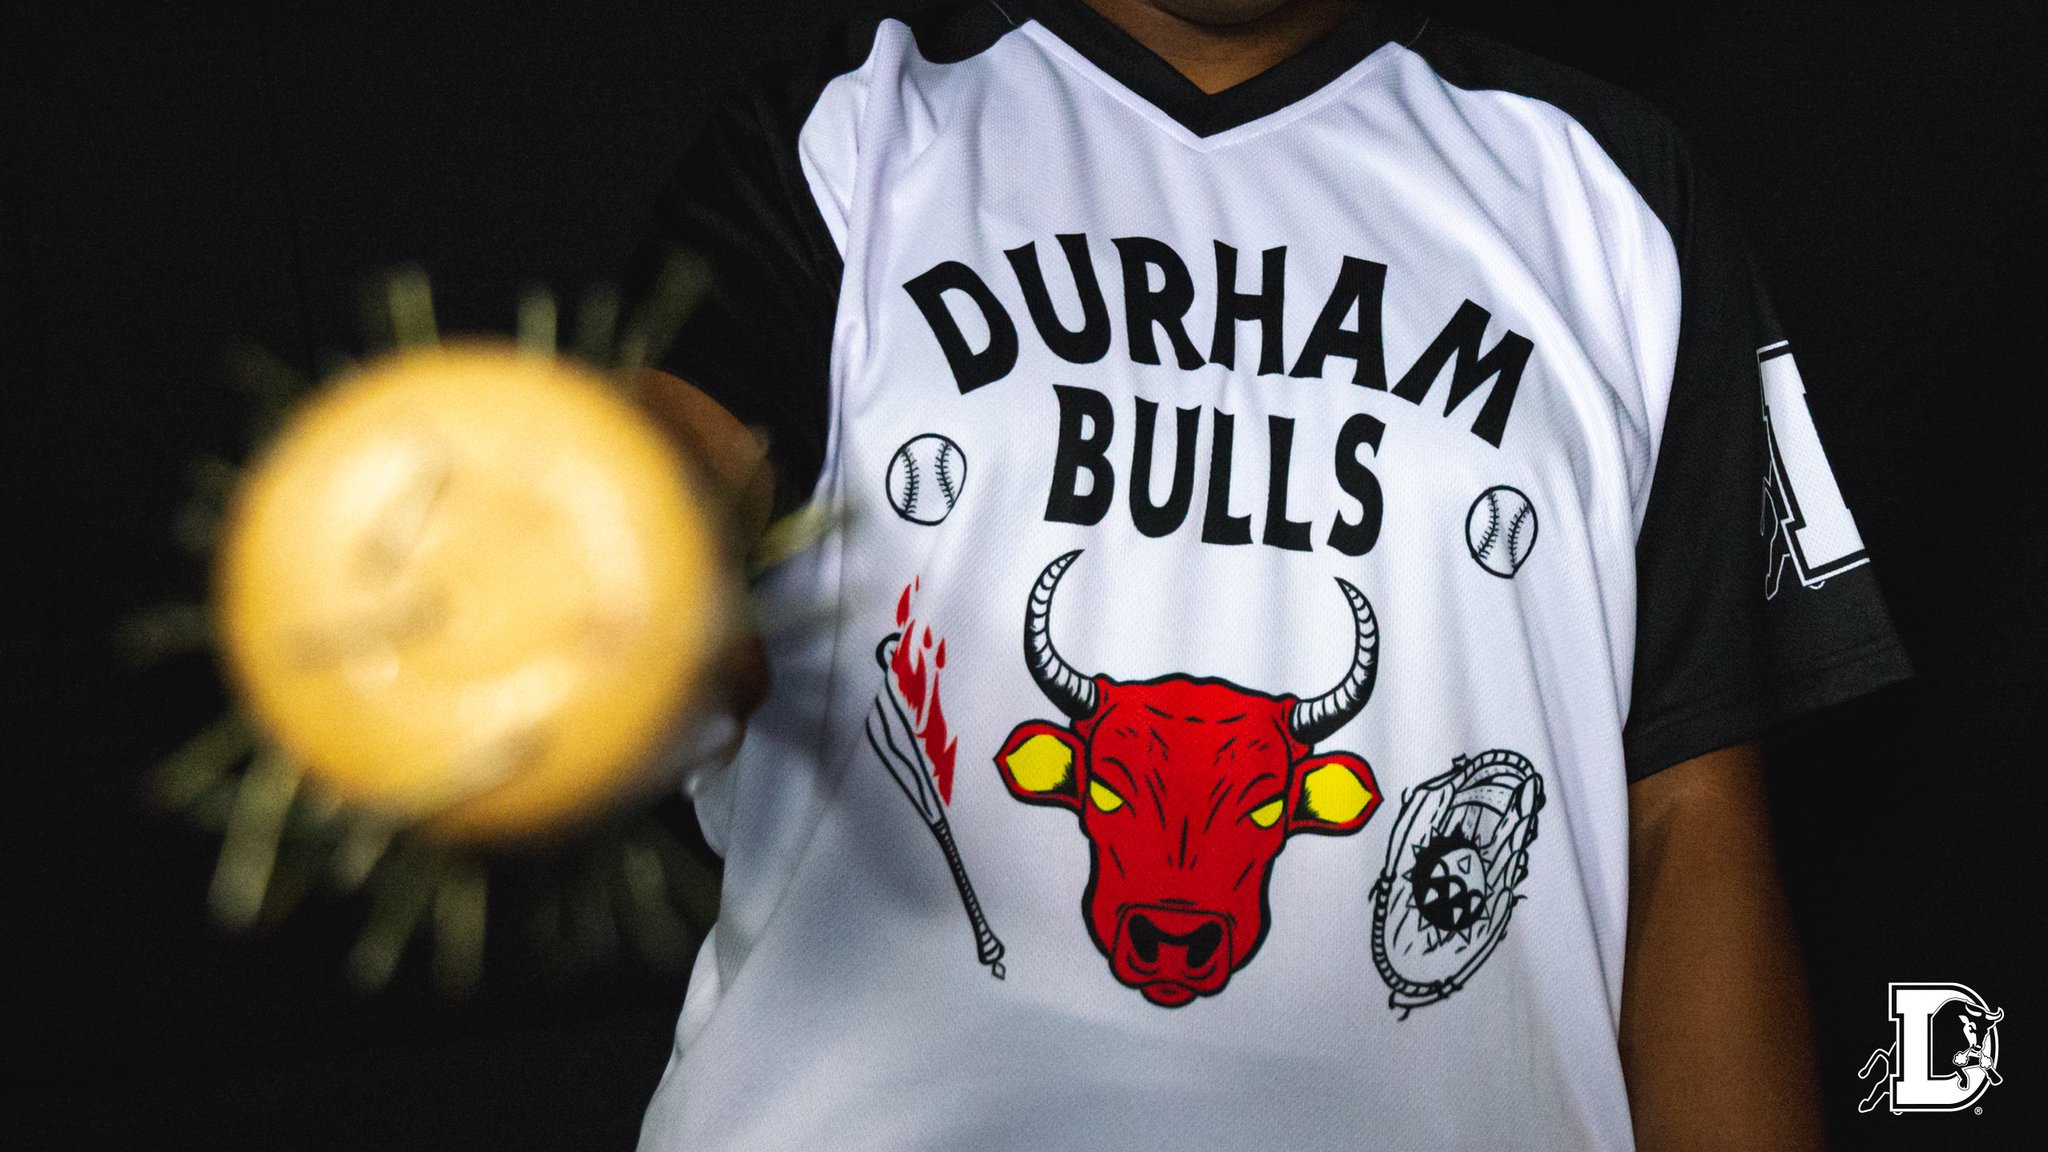  Majestic Adult MiLB Replica Crewneck Team Jersey Durham Bulls  2XL : Sports Fan T Shirts : Sports & Outdoors